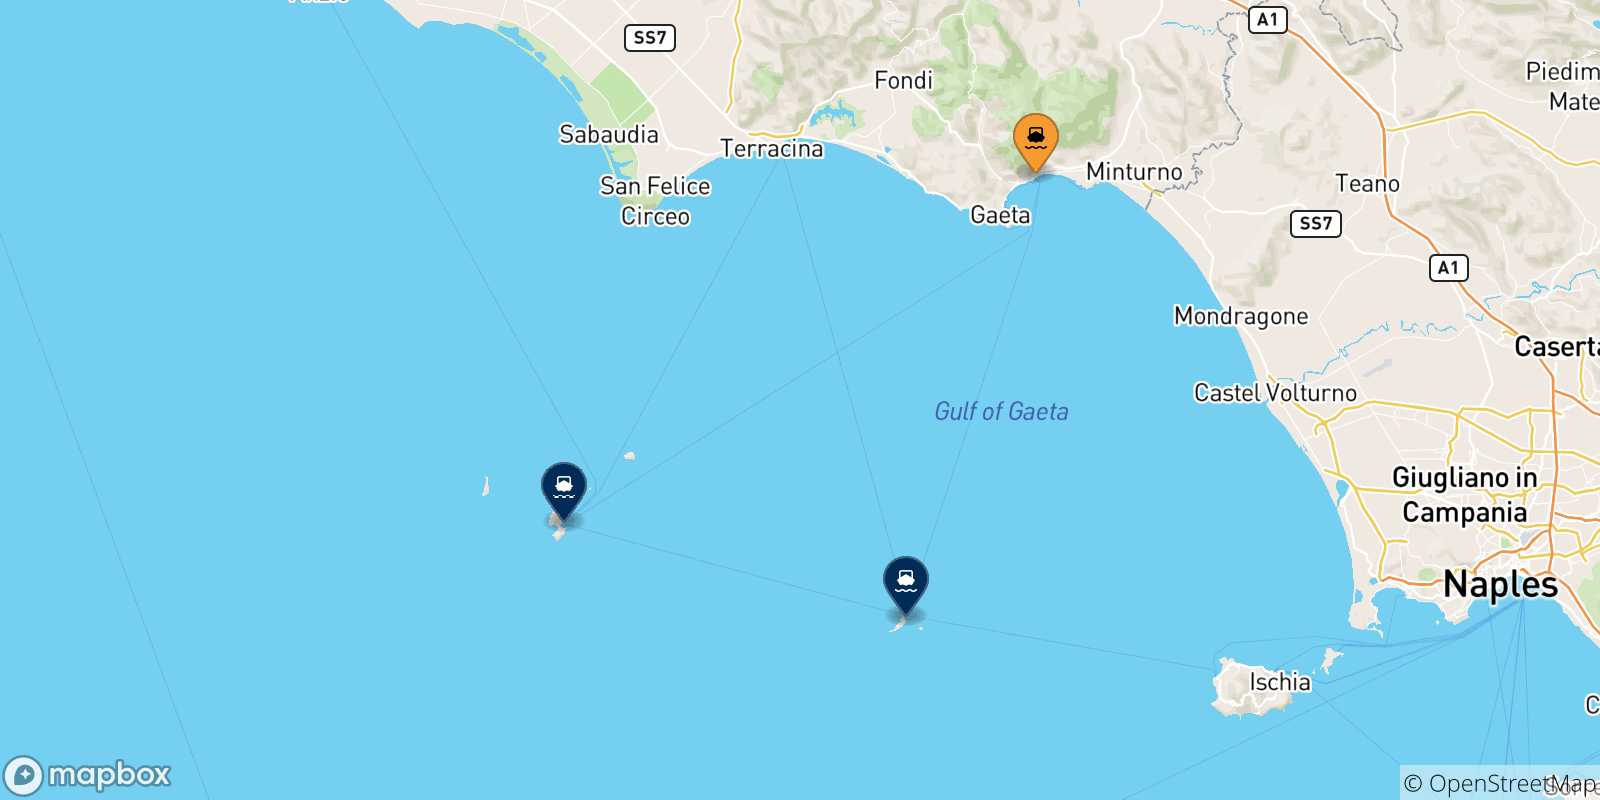 Mappa delle possibili rotte tra Formia e le Isole Pontine